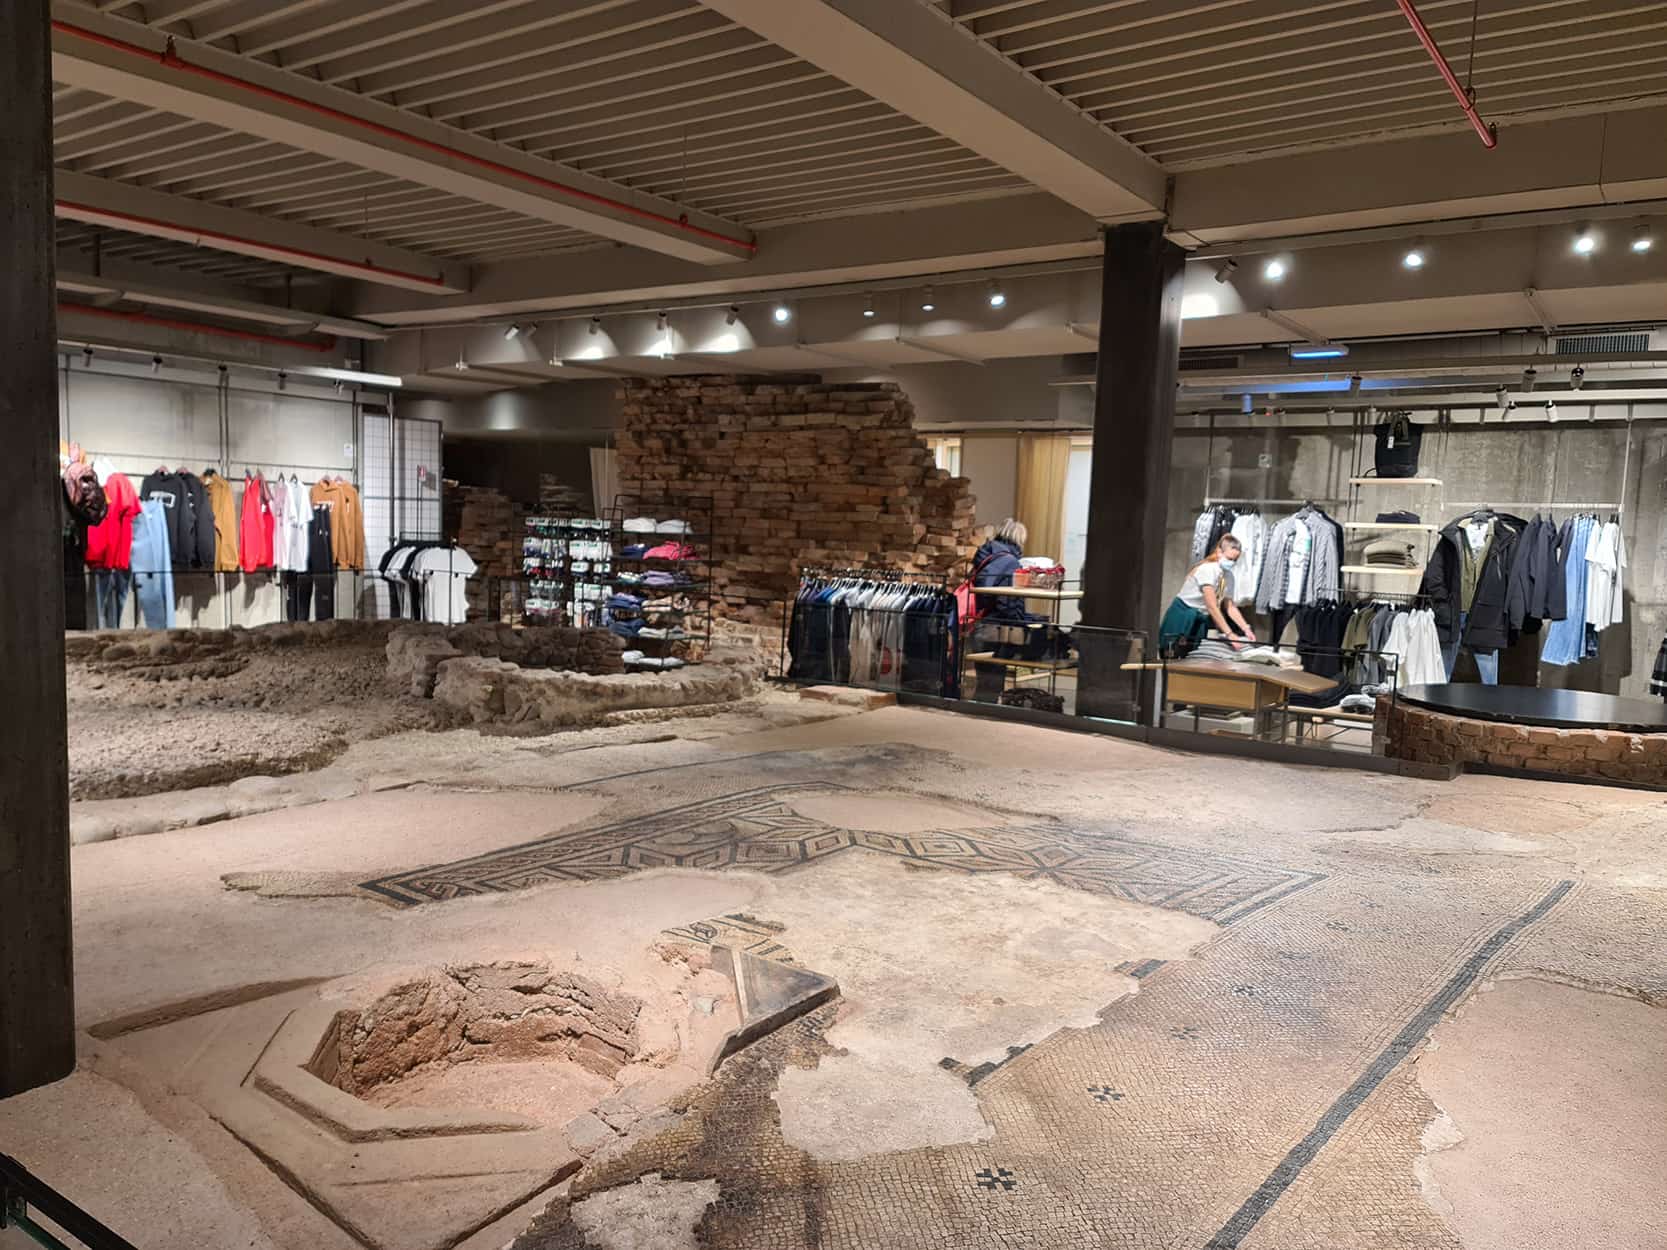 In foto si vedono i resti romani della Verona antica che si trovano al piano inferiore della Benetton, circondati quindi da indumenti in vendita!